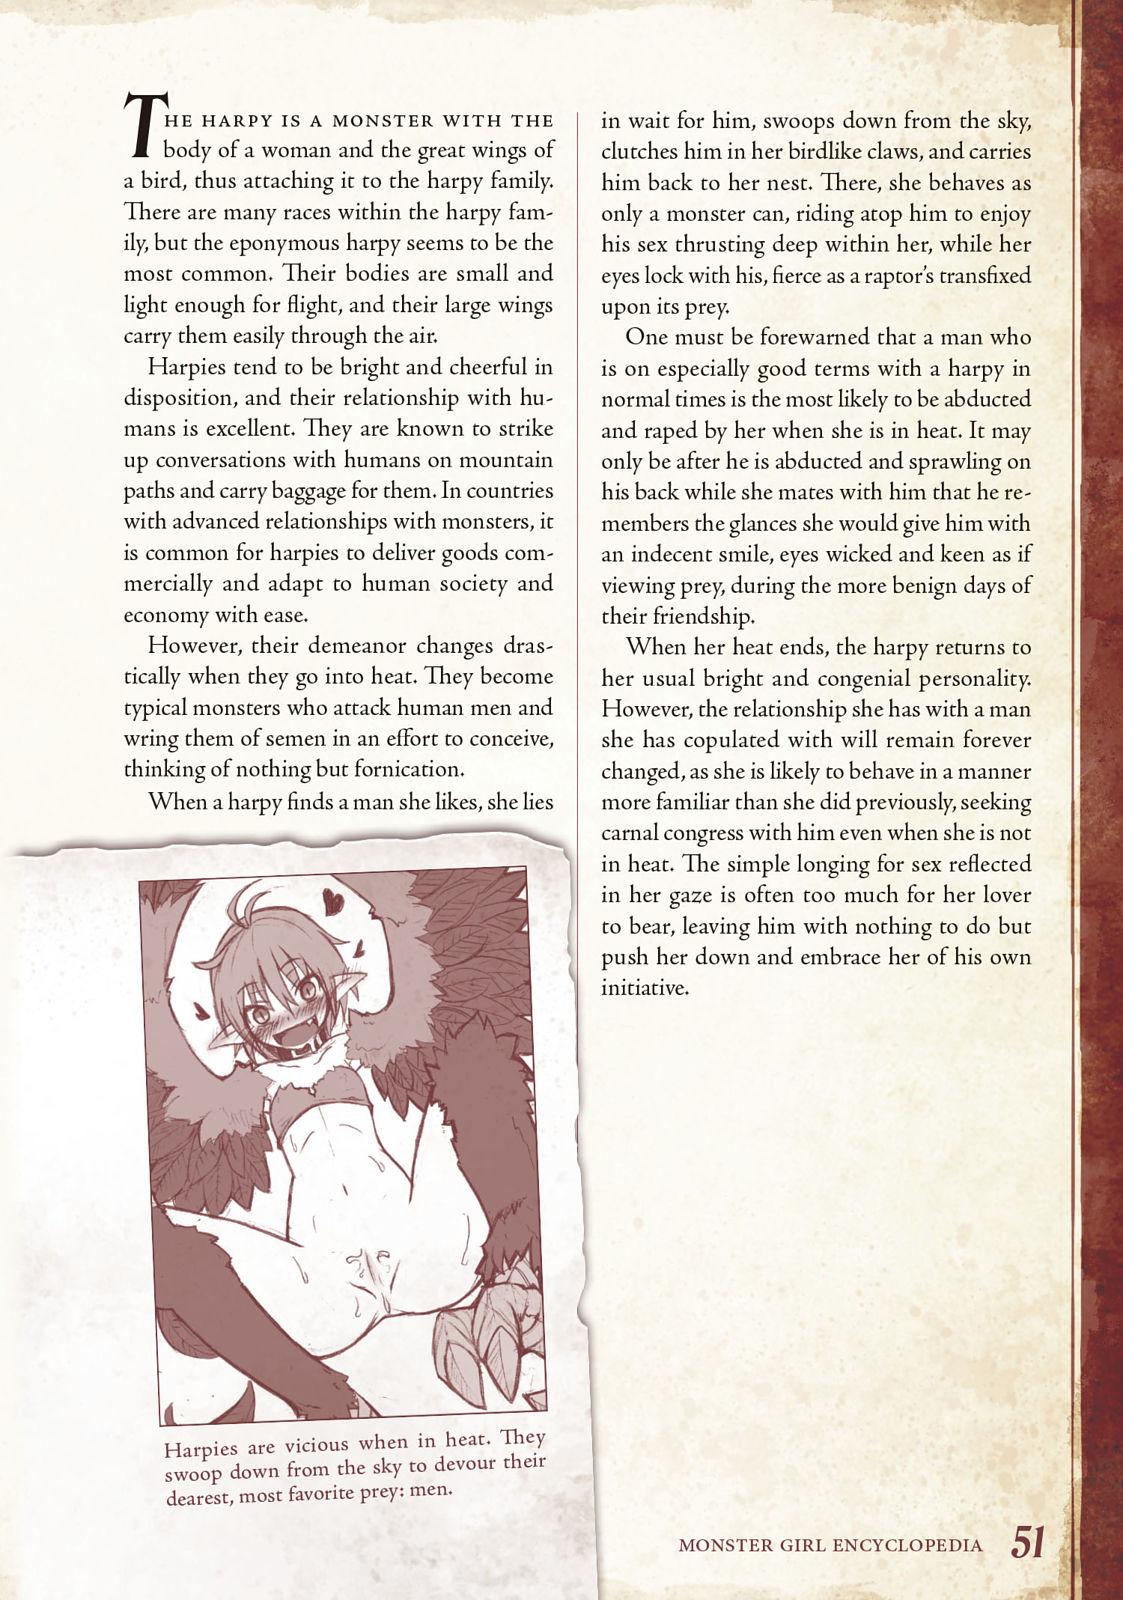 Monster Girl Encyclopedia Vol. 1 51